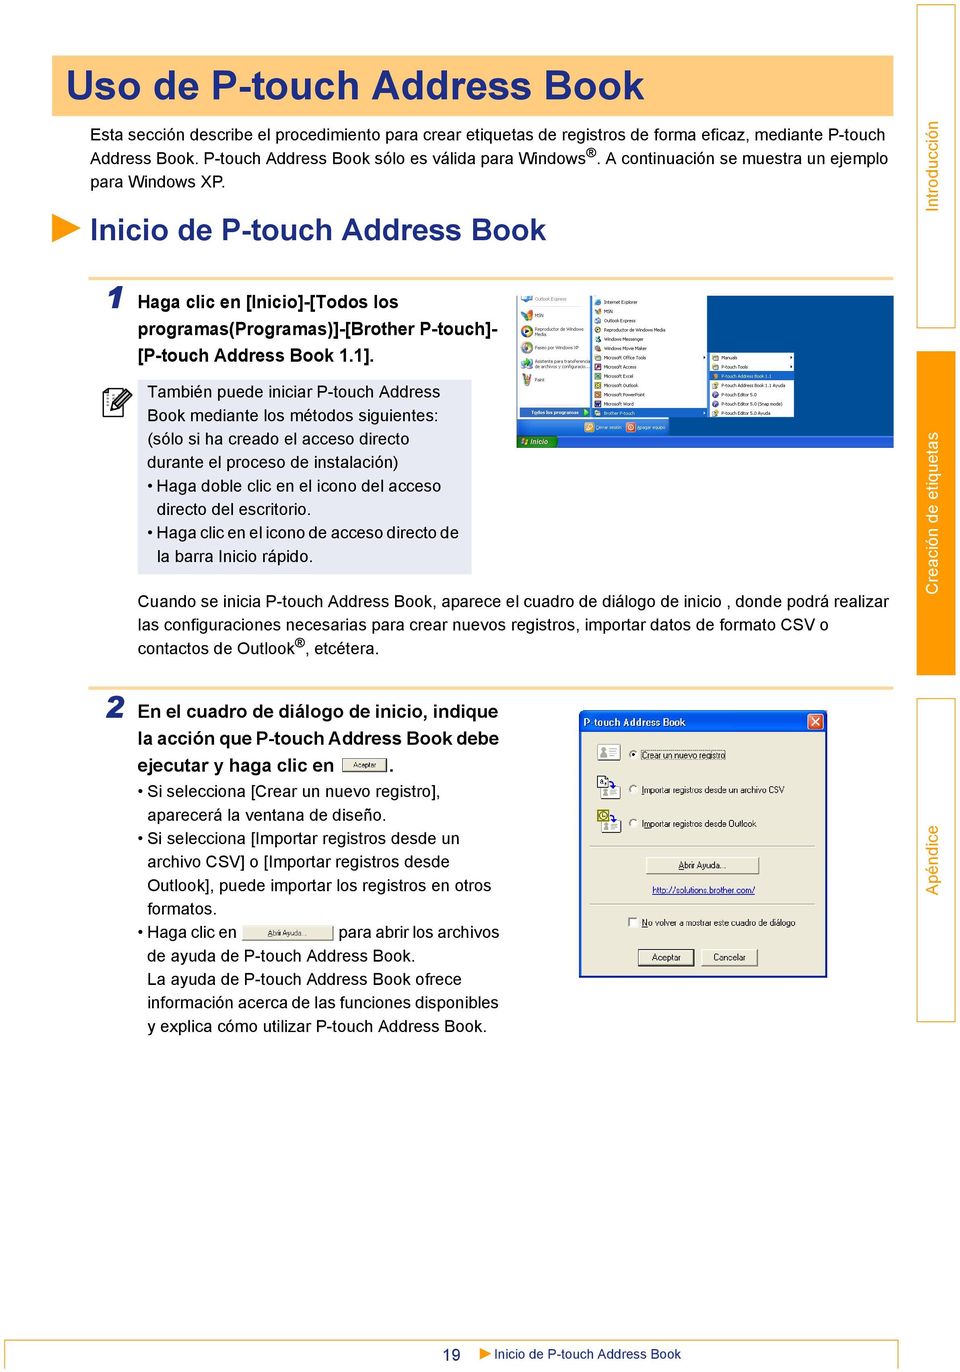 También puede iniciar P-touch Address Book mediante los métodos siguientes: (sólo si ha creado el acceso directo durante el proceso de instalación) Haga doble clic en el icono del acceso directo del